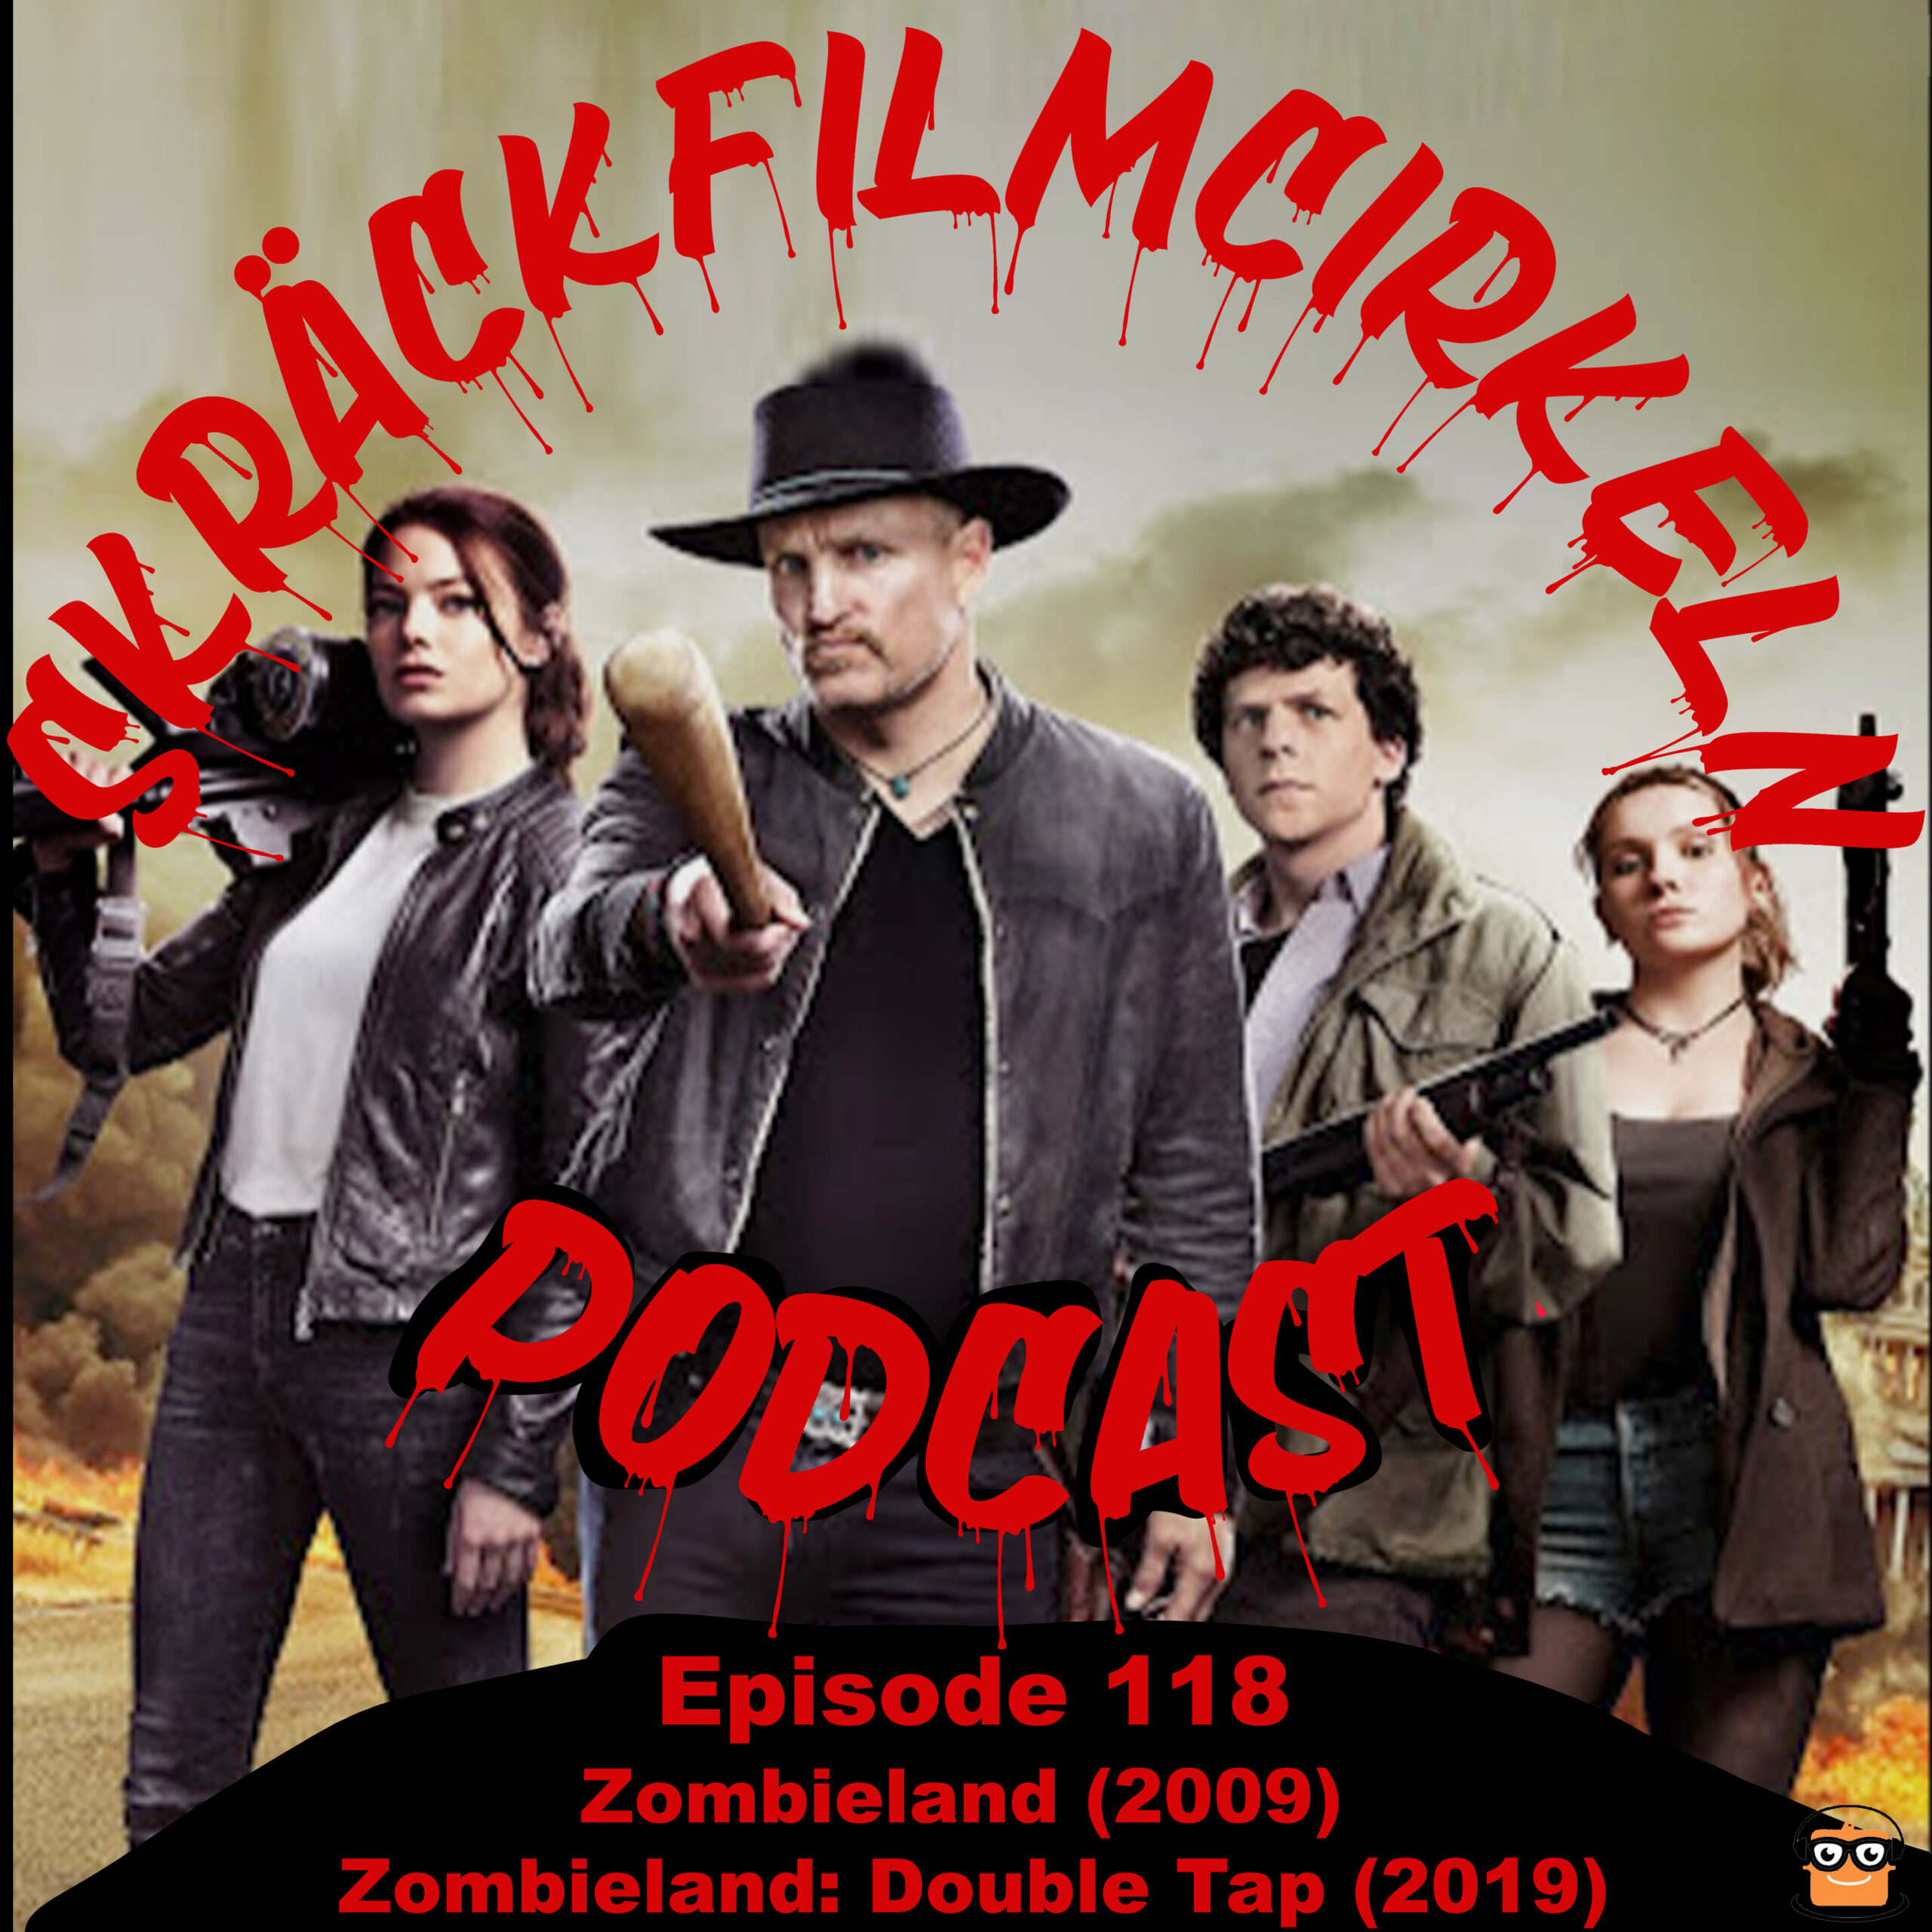 Episode 118 – Zombieland (2009) & Zombieland: Double Tap (2019)